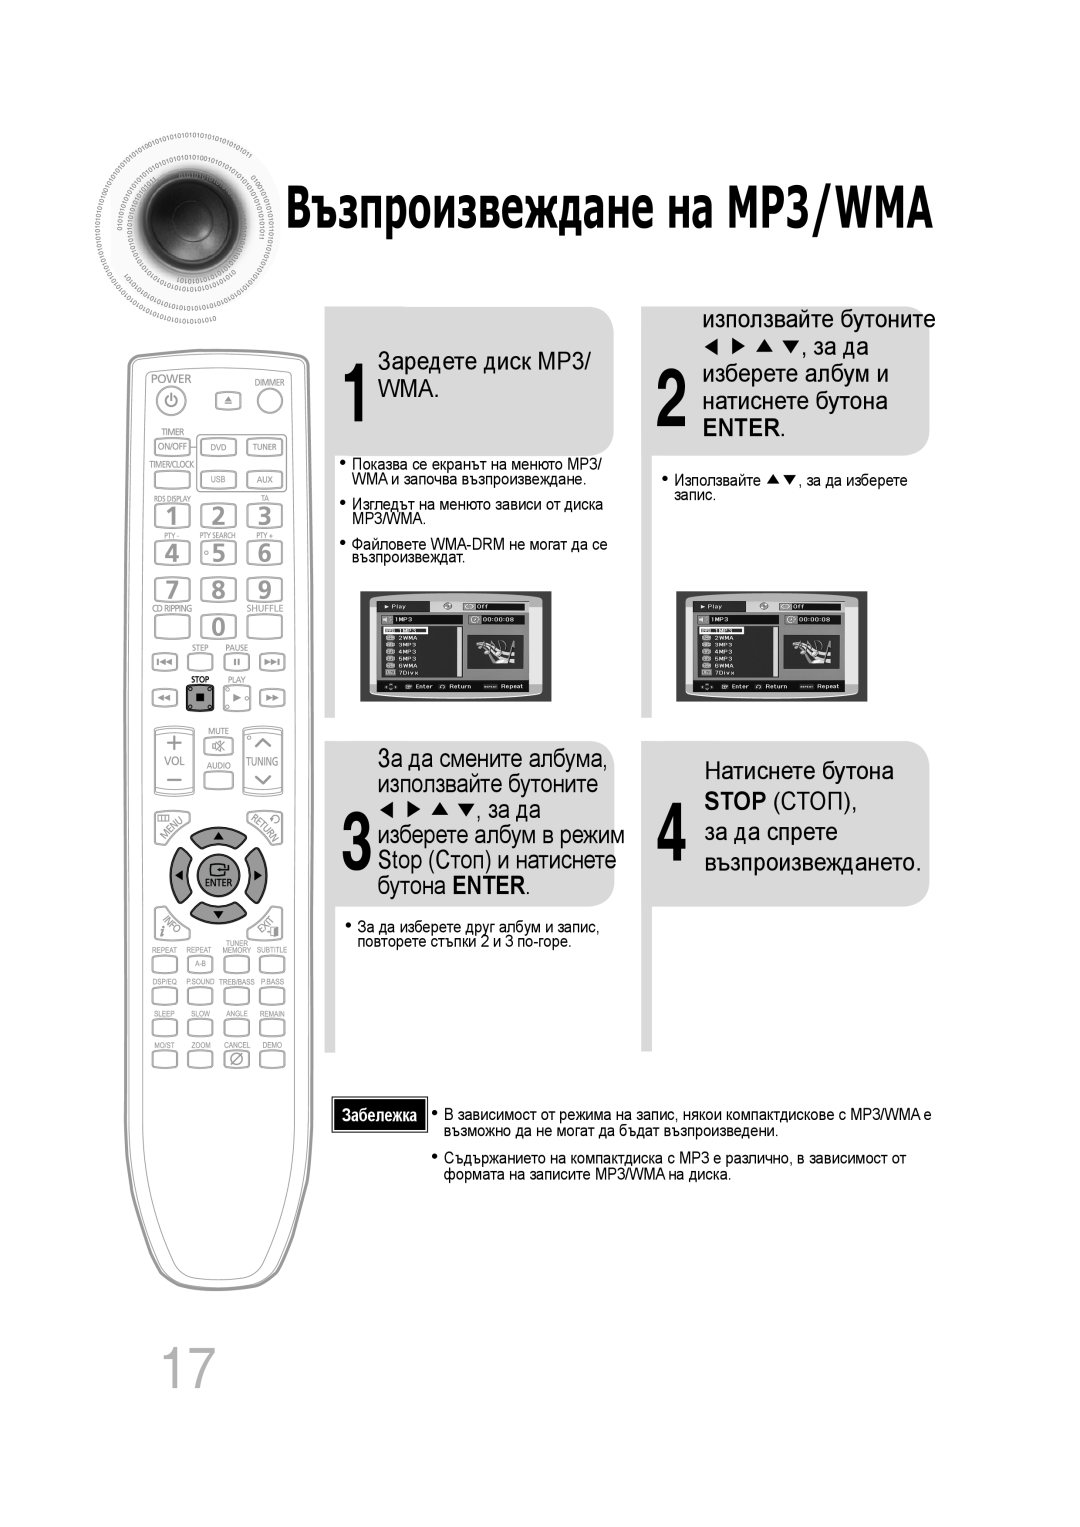 Samsung MM-C330D/EDC manual 1Заредете диск MP3/ WMA, използвайте бутоните за да 2 изберете албум и натиснете бутона, Enter 